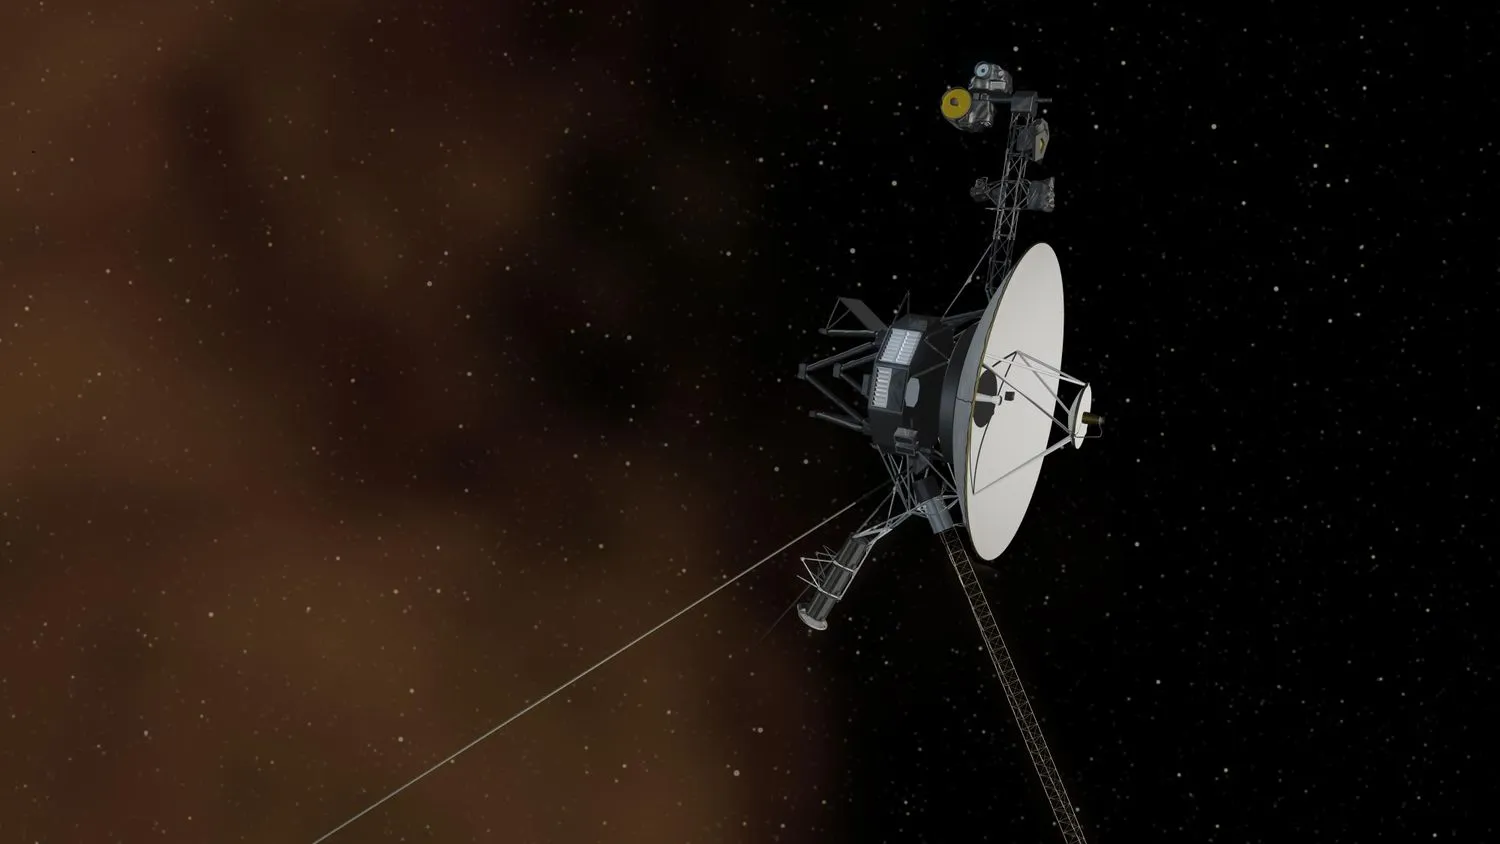 Eine künstlerische Darstellung der Raumsonde Voyager 1 im interstellaren Raum.